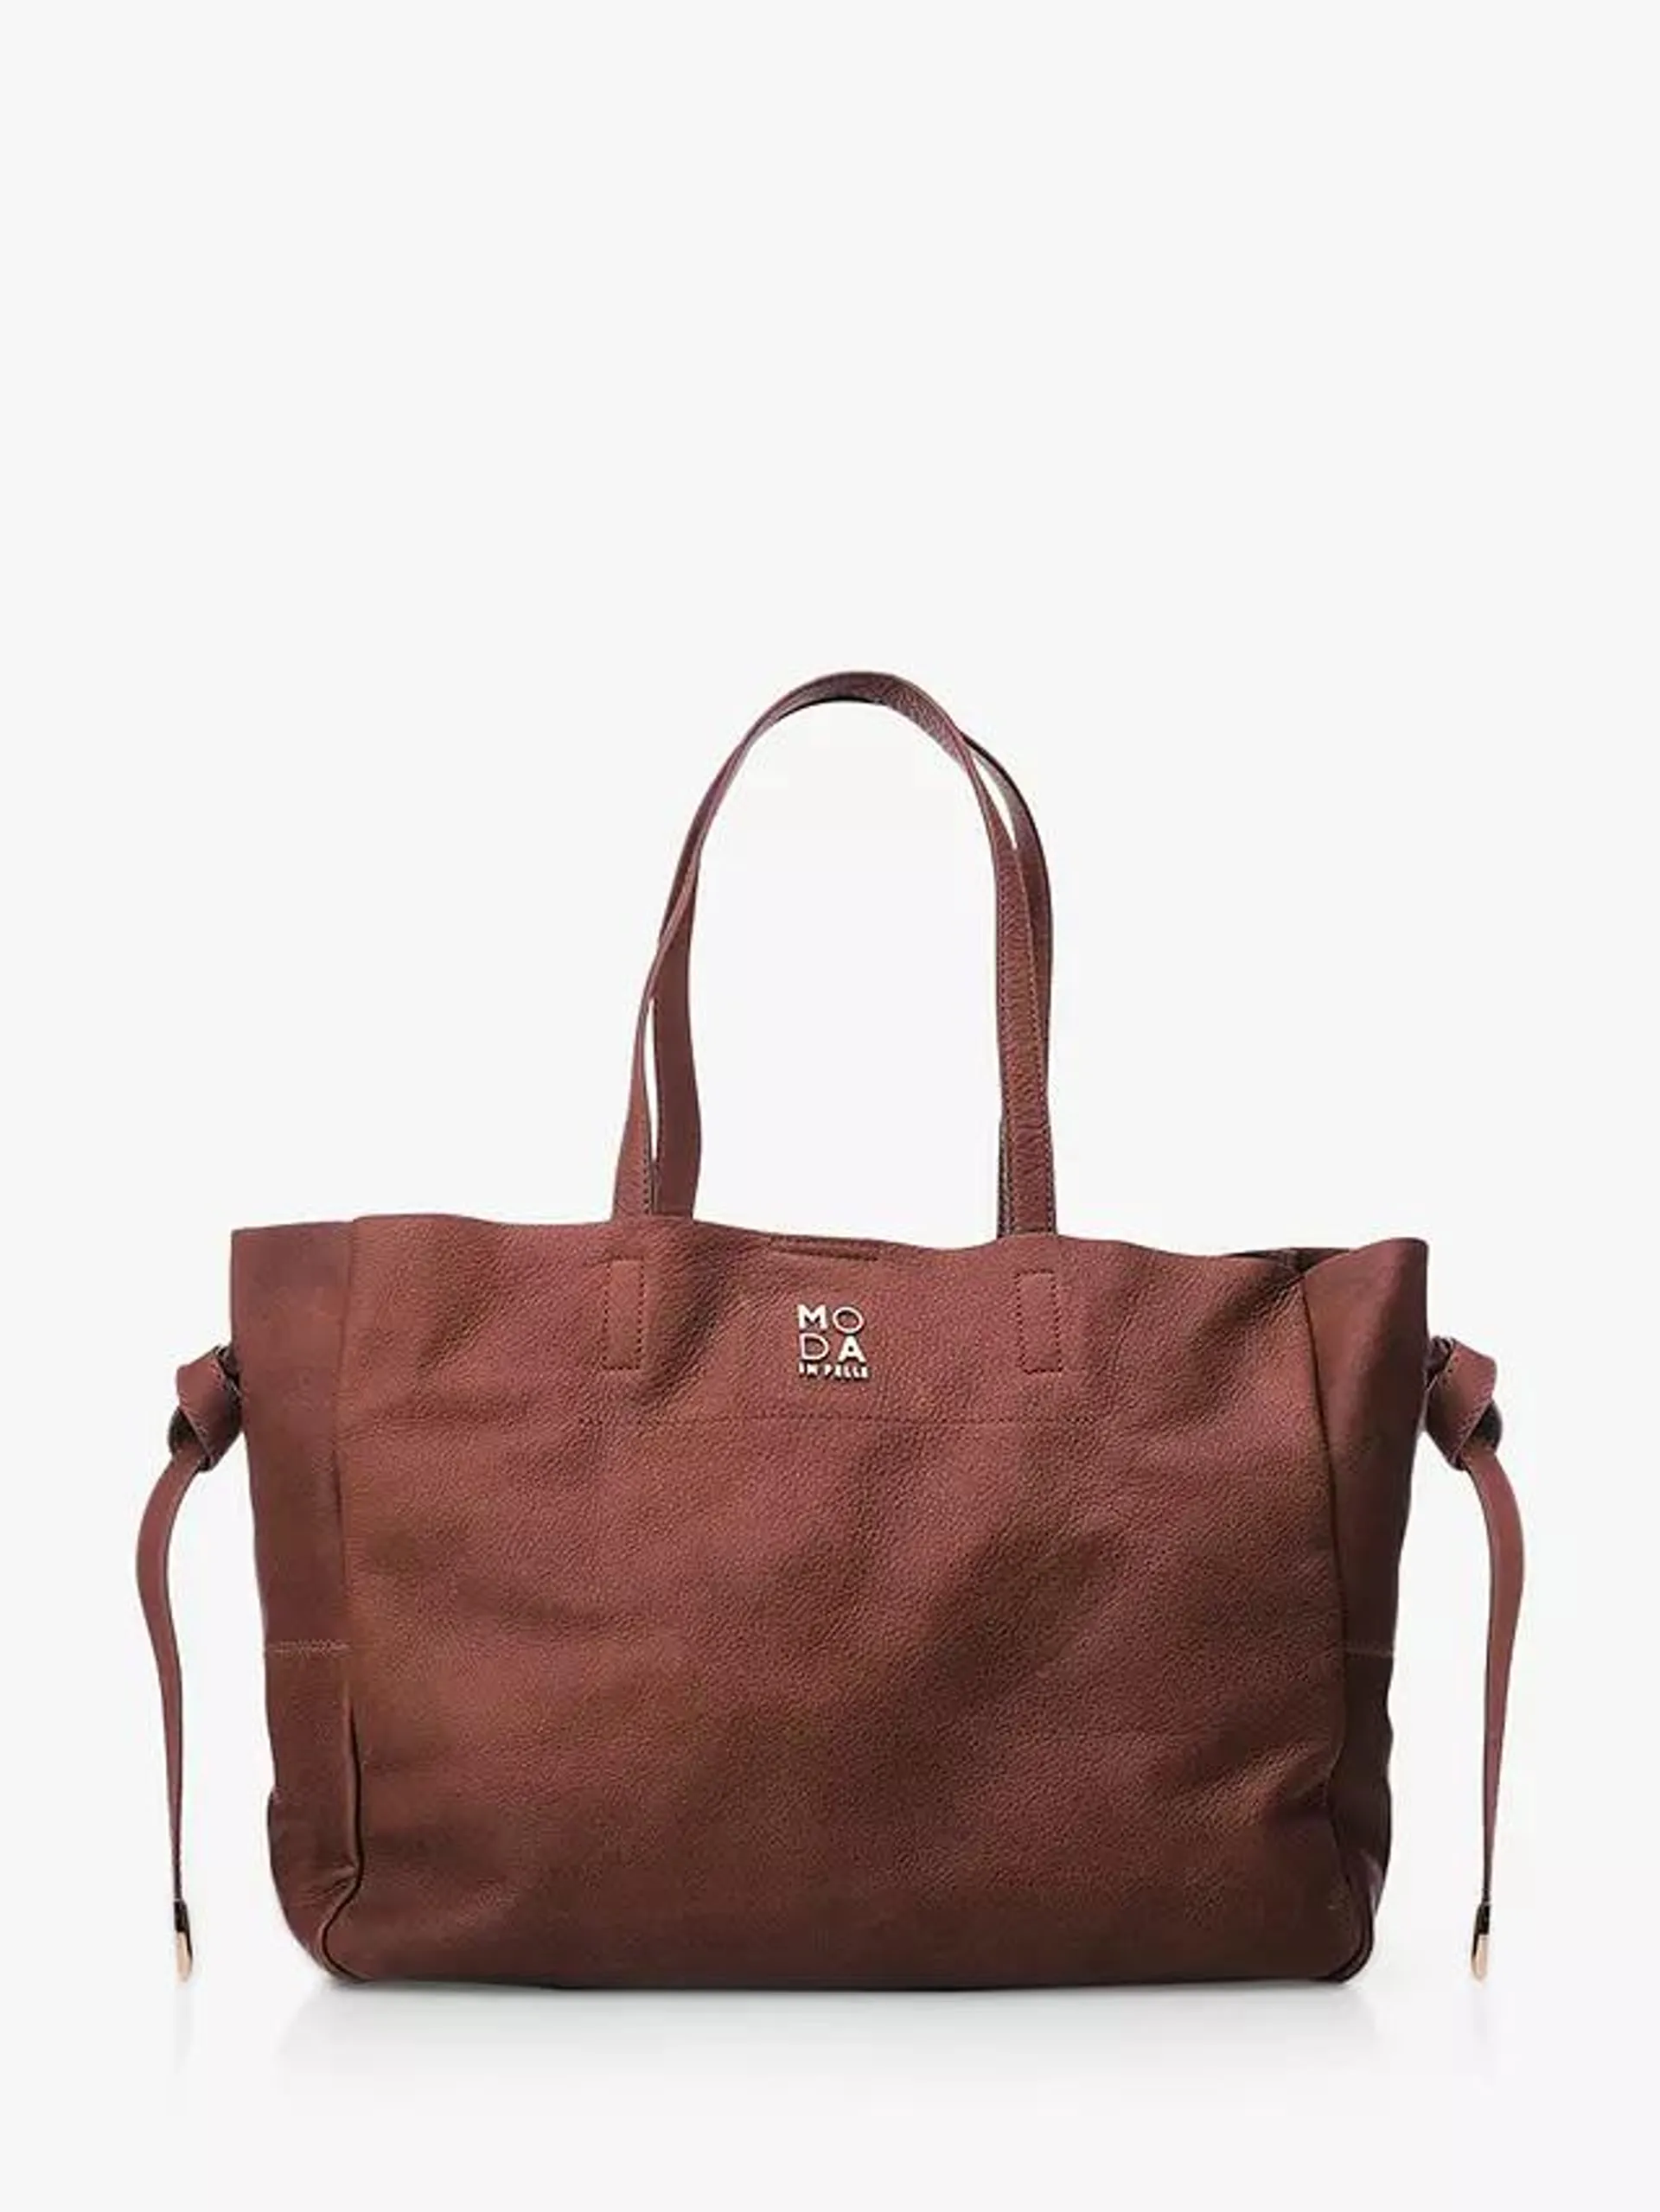 Moda in Pelle Indie Pebble Leather Tote Bag, Tan